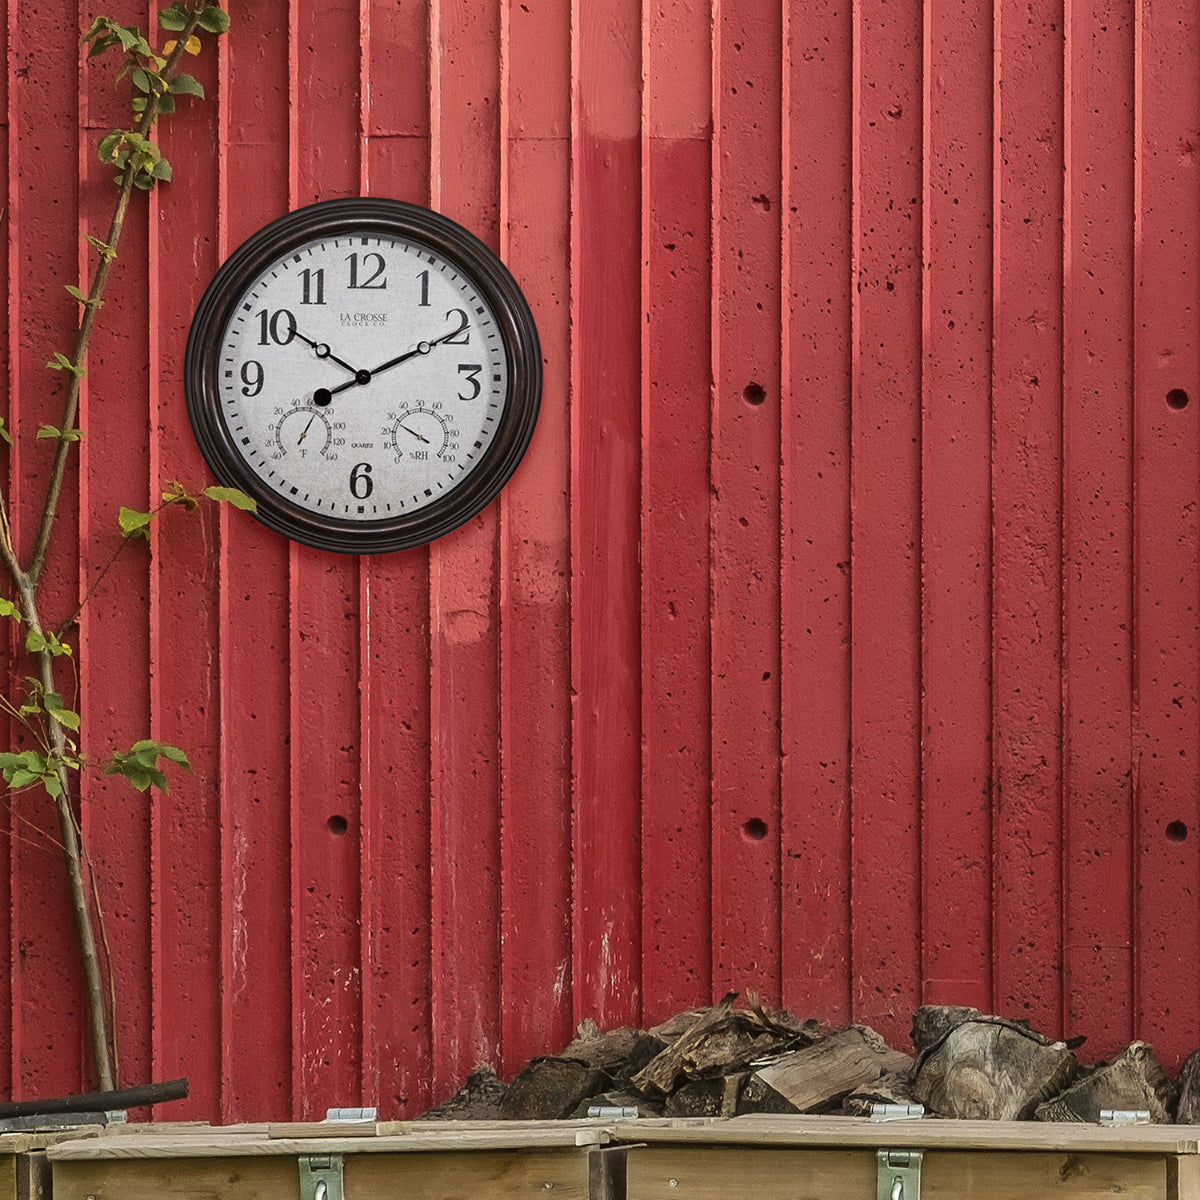 La Crosse 404-3015 Indoor / Outdoor Wall Clock, 15" Diameter